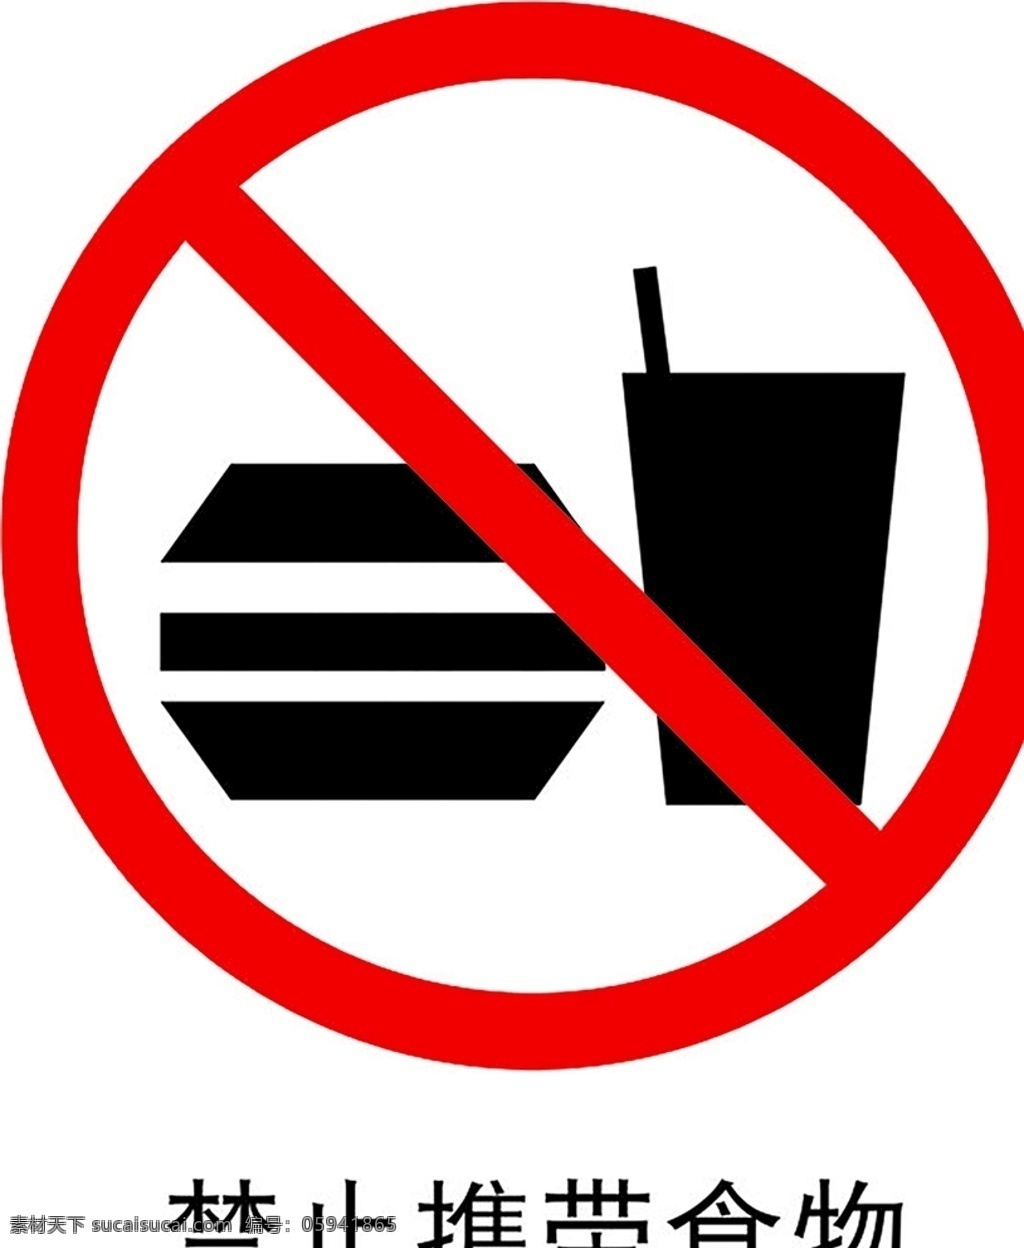 禁止携带食物 安全标识 安全 标识 禁令牌 标志 安全标志展板 标志图标 公共标识标志